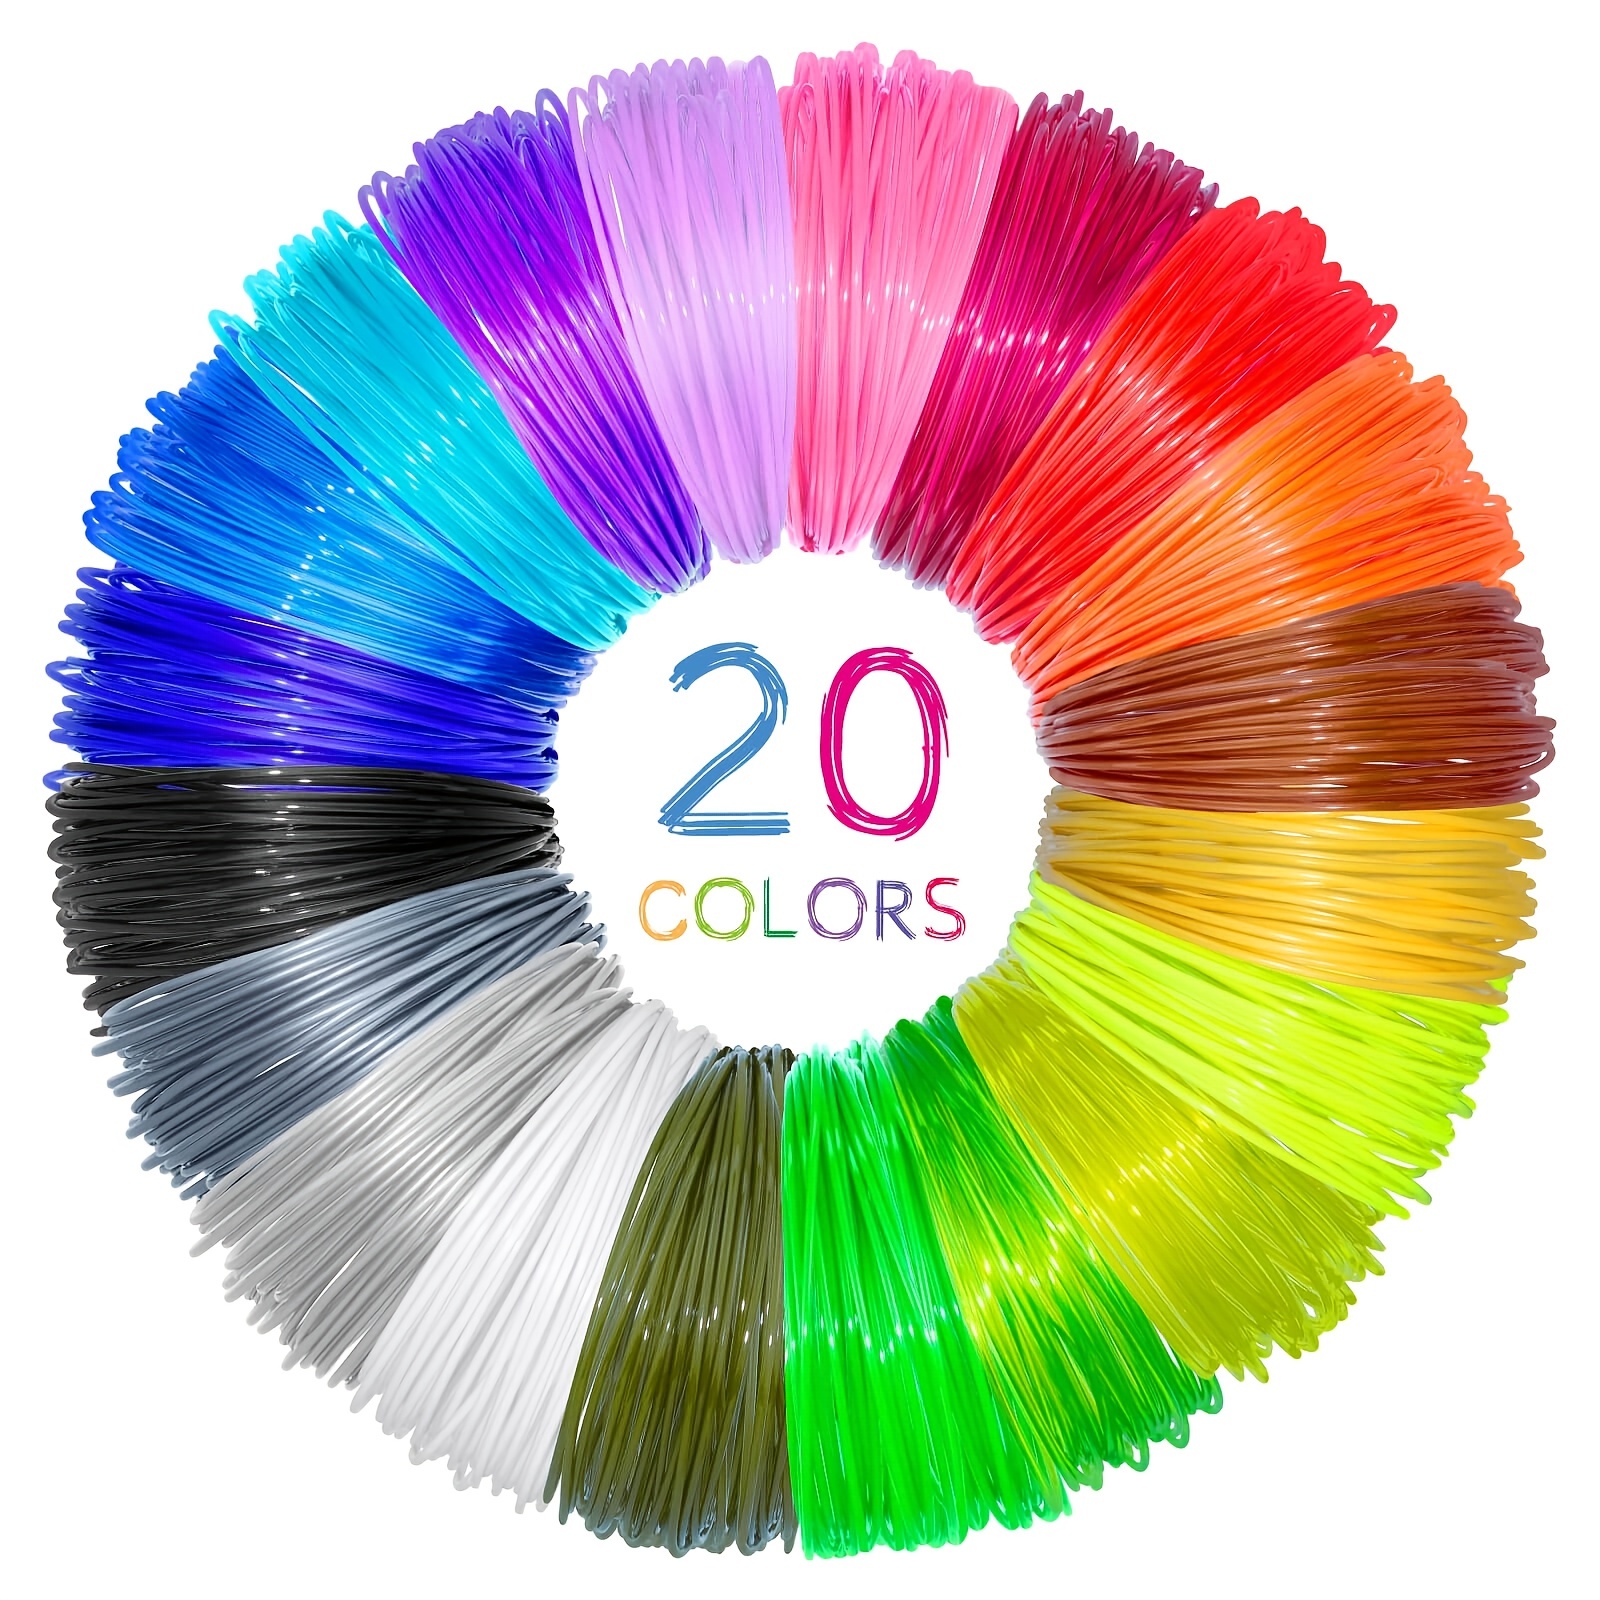 3D Printing Pen PCL Filament Refills 20 Colors, New Zealand Happy Kid  Limited